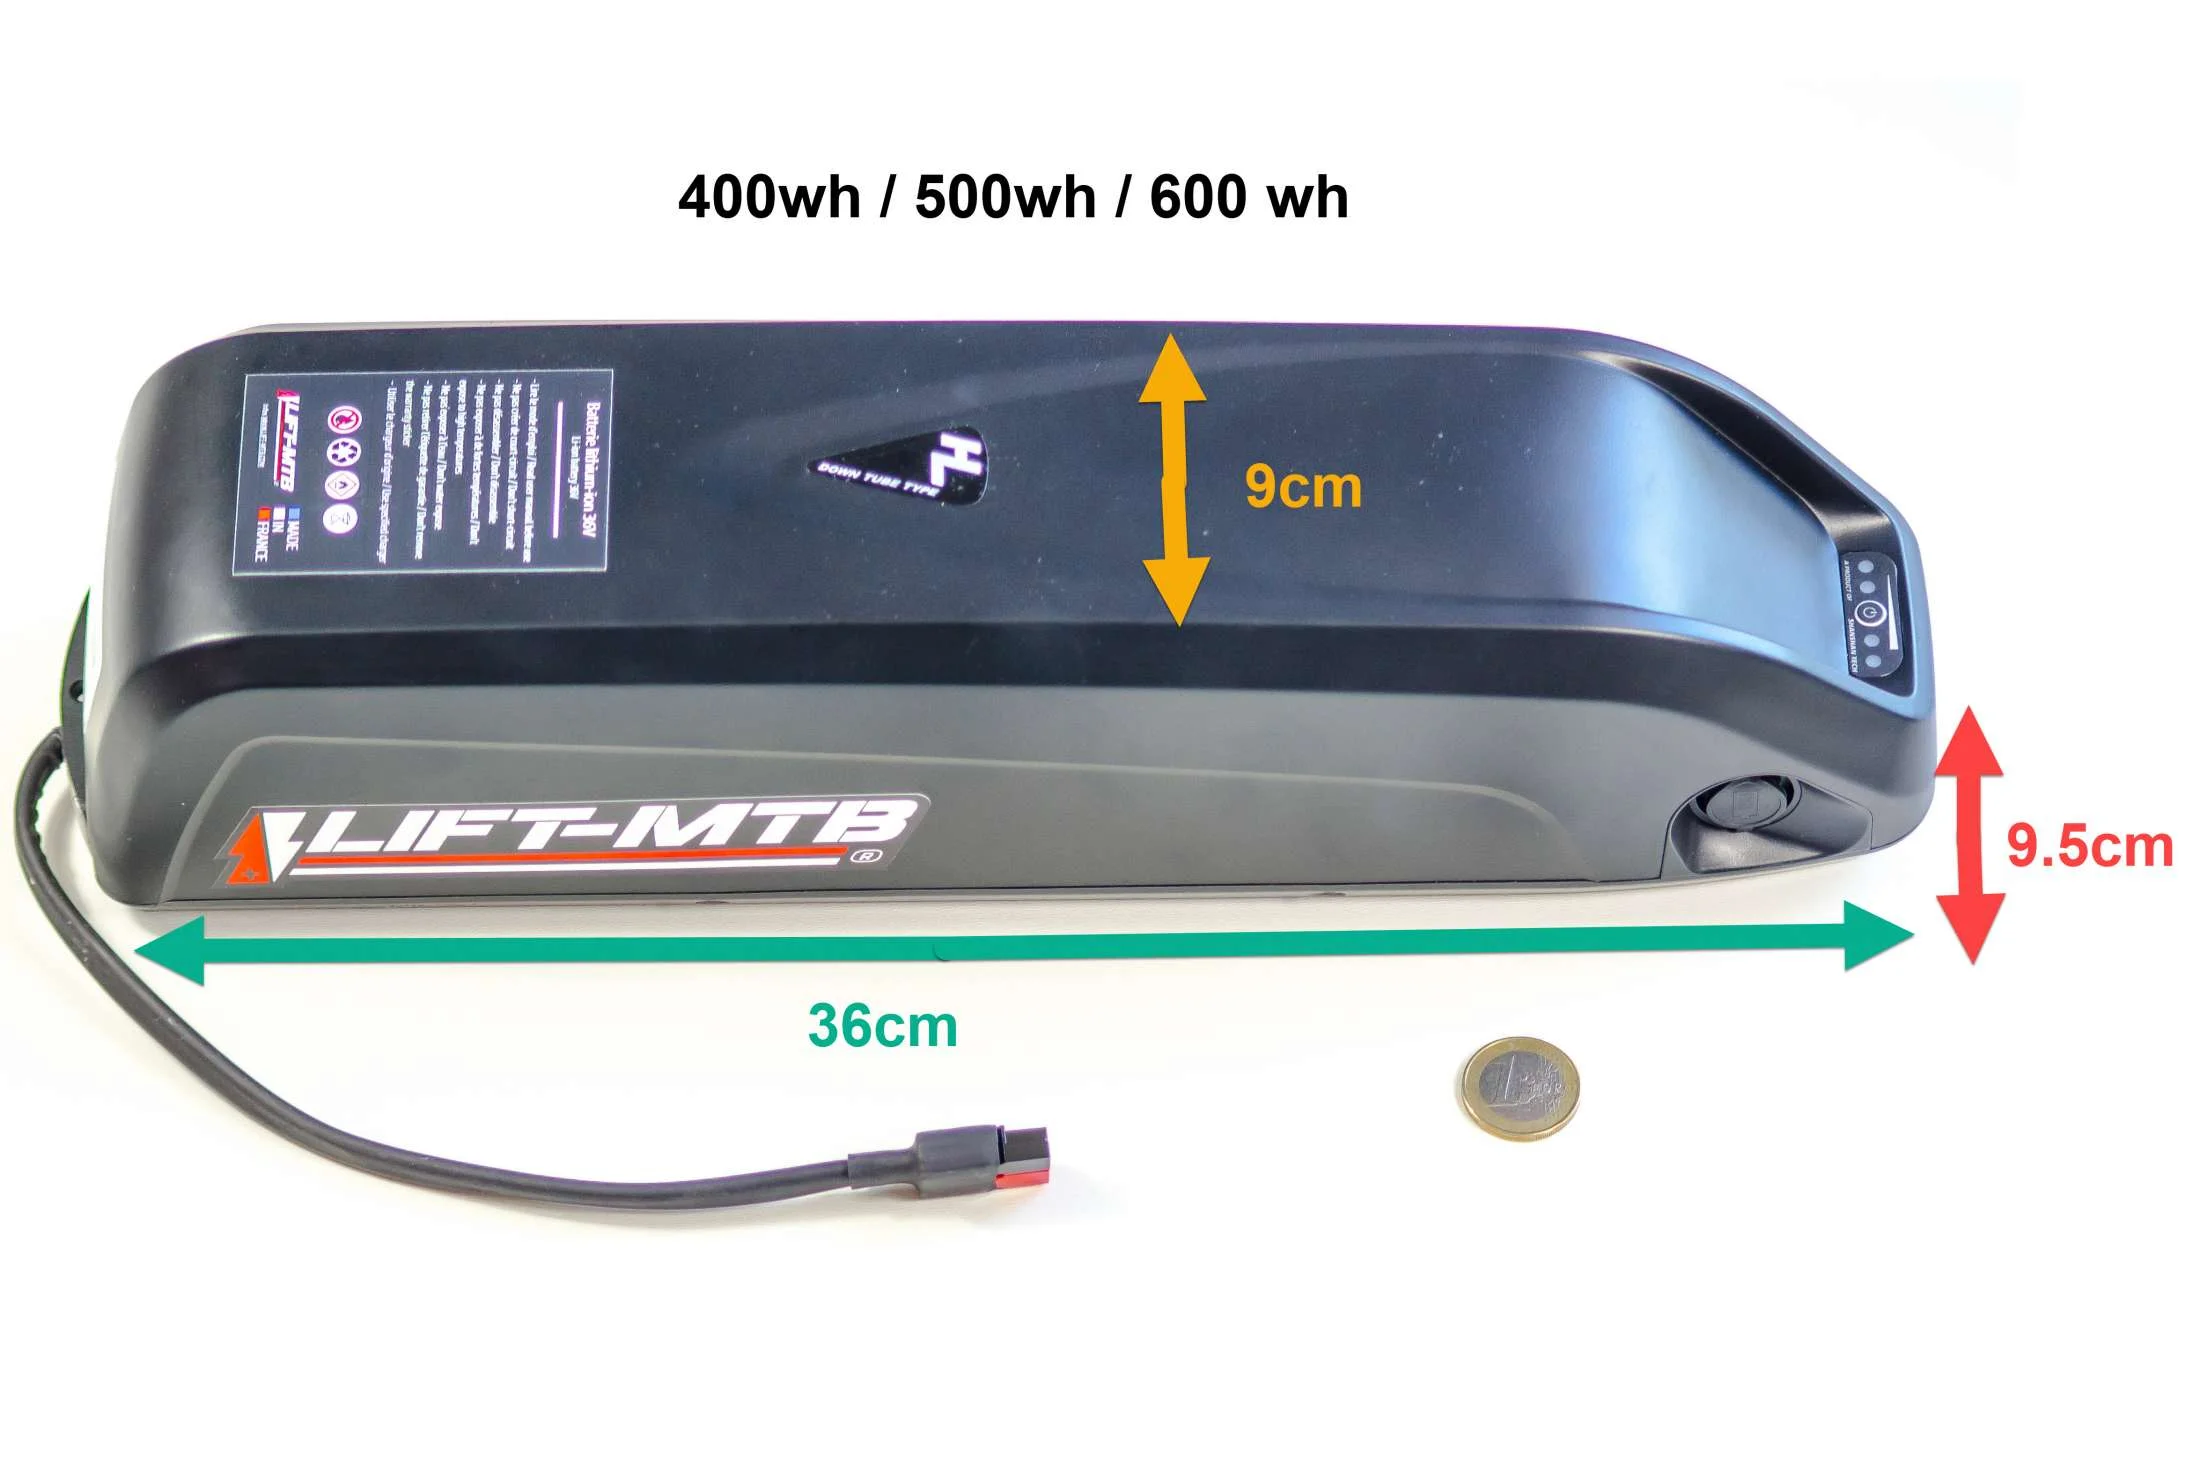 Batterie rigide pour vélo électrique - Fabrication en France.